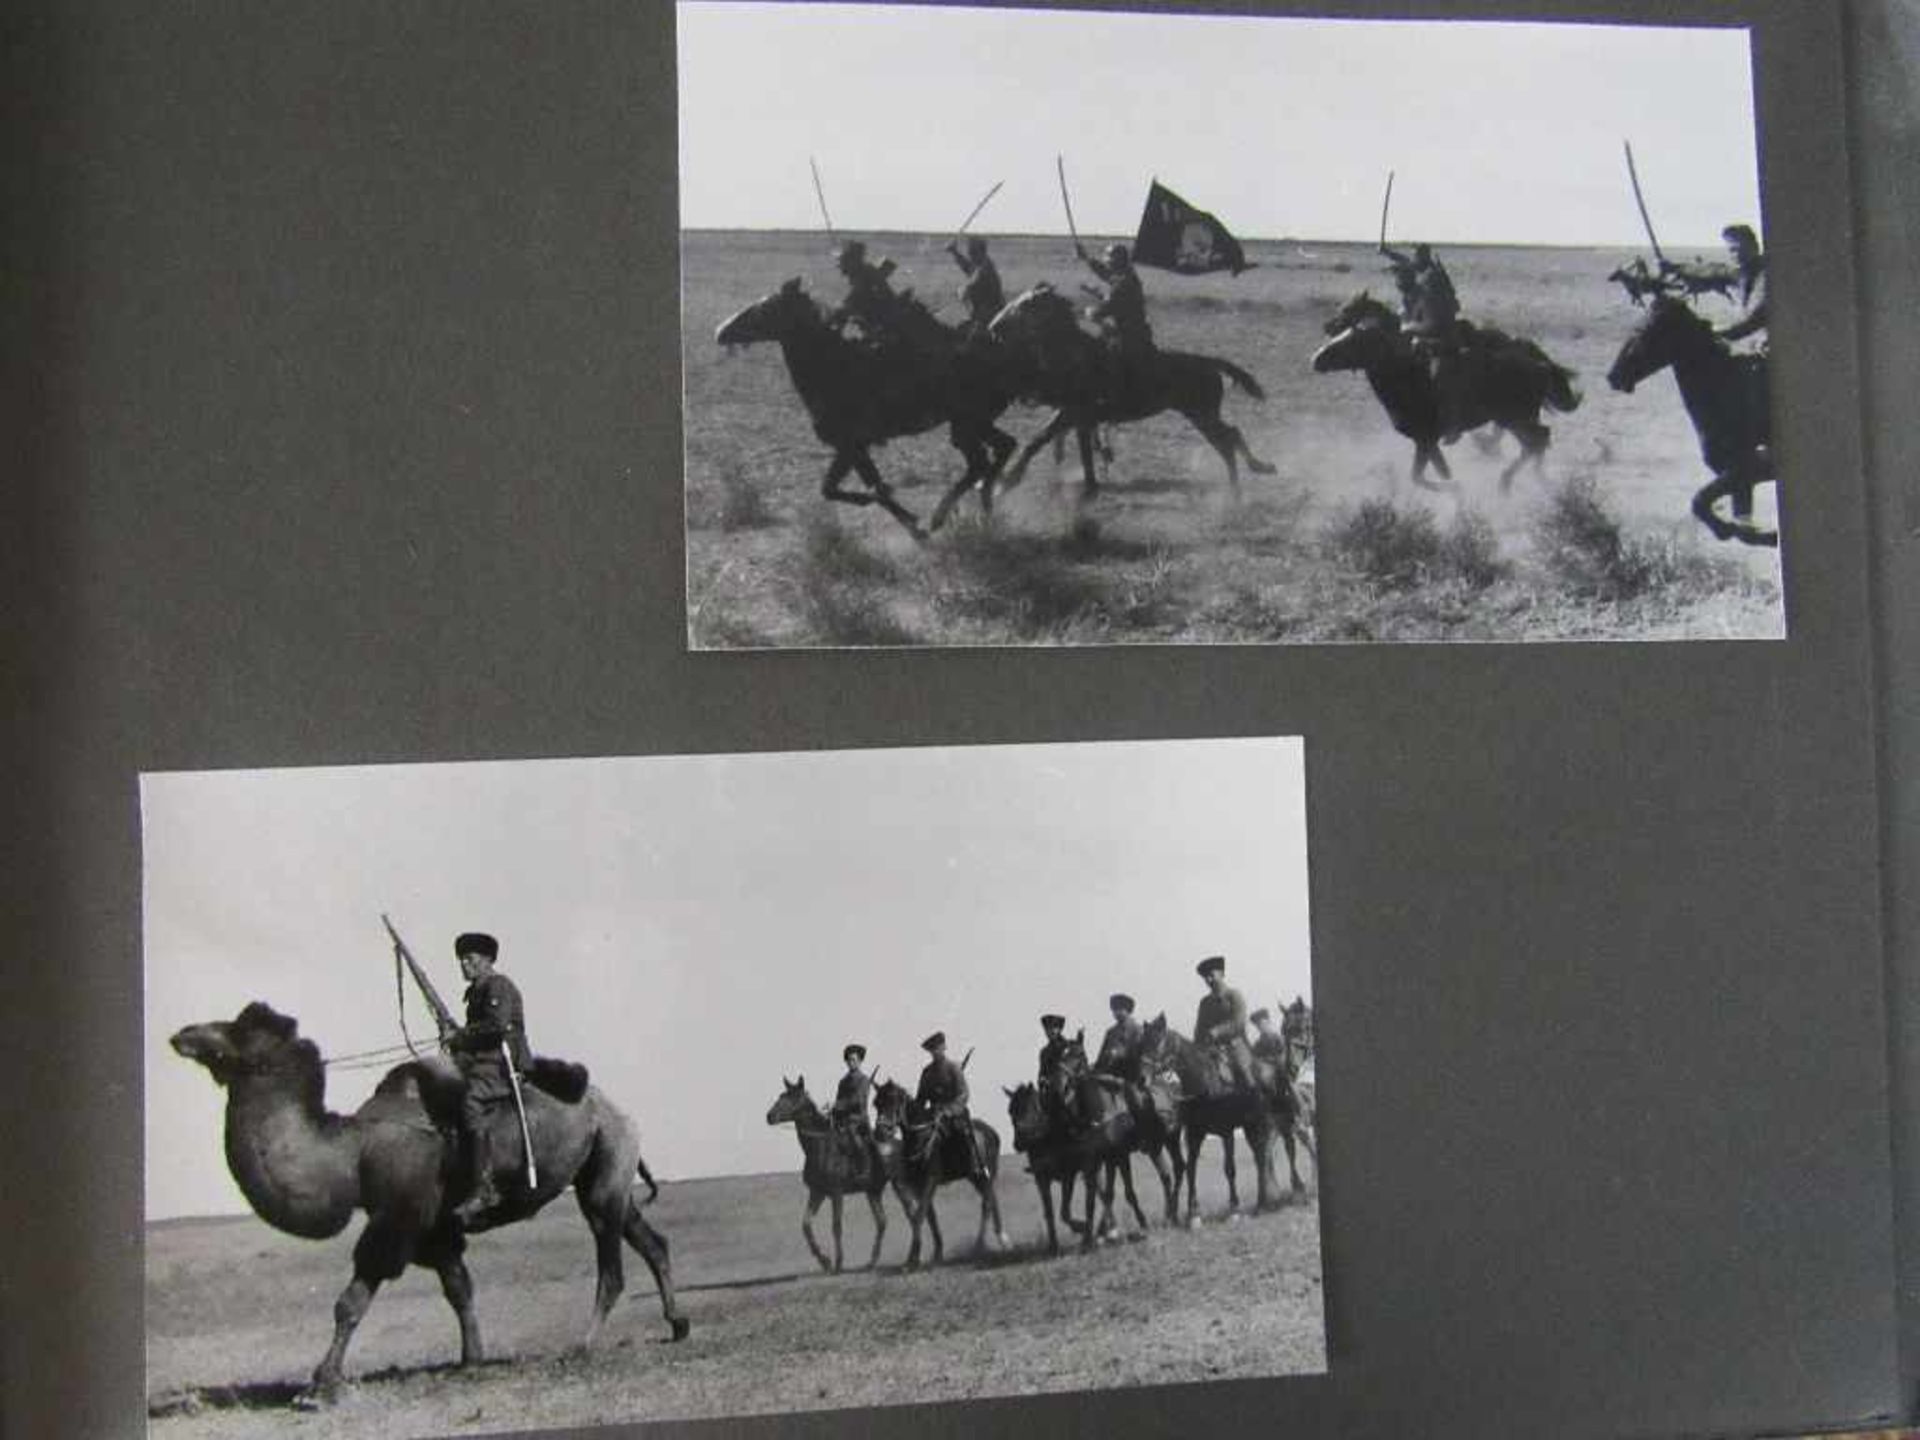 Fotoalbum 2.Wk Fotos in Großformat sehr selten Abbildungen Kaukasus 1942 mindestens 40 Fotos- - - - Bild 11 aus 13